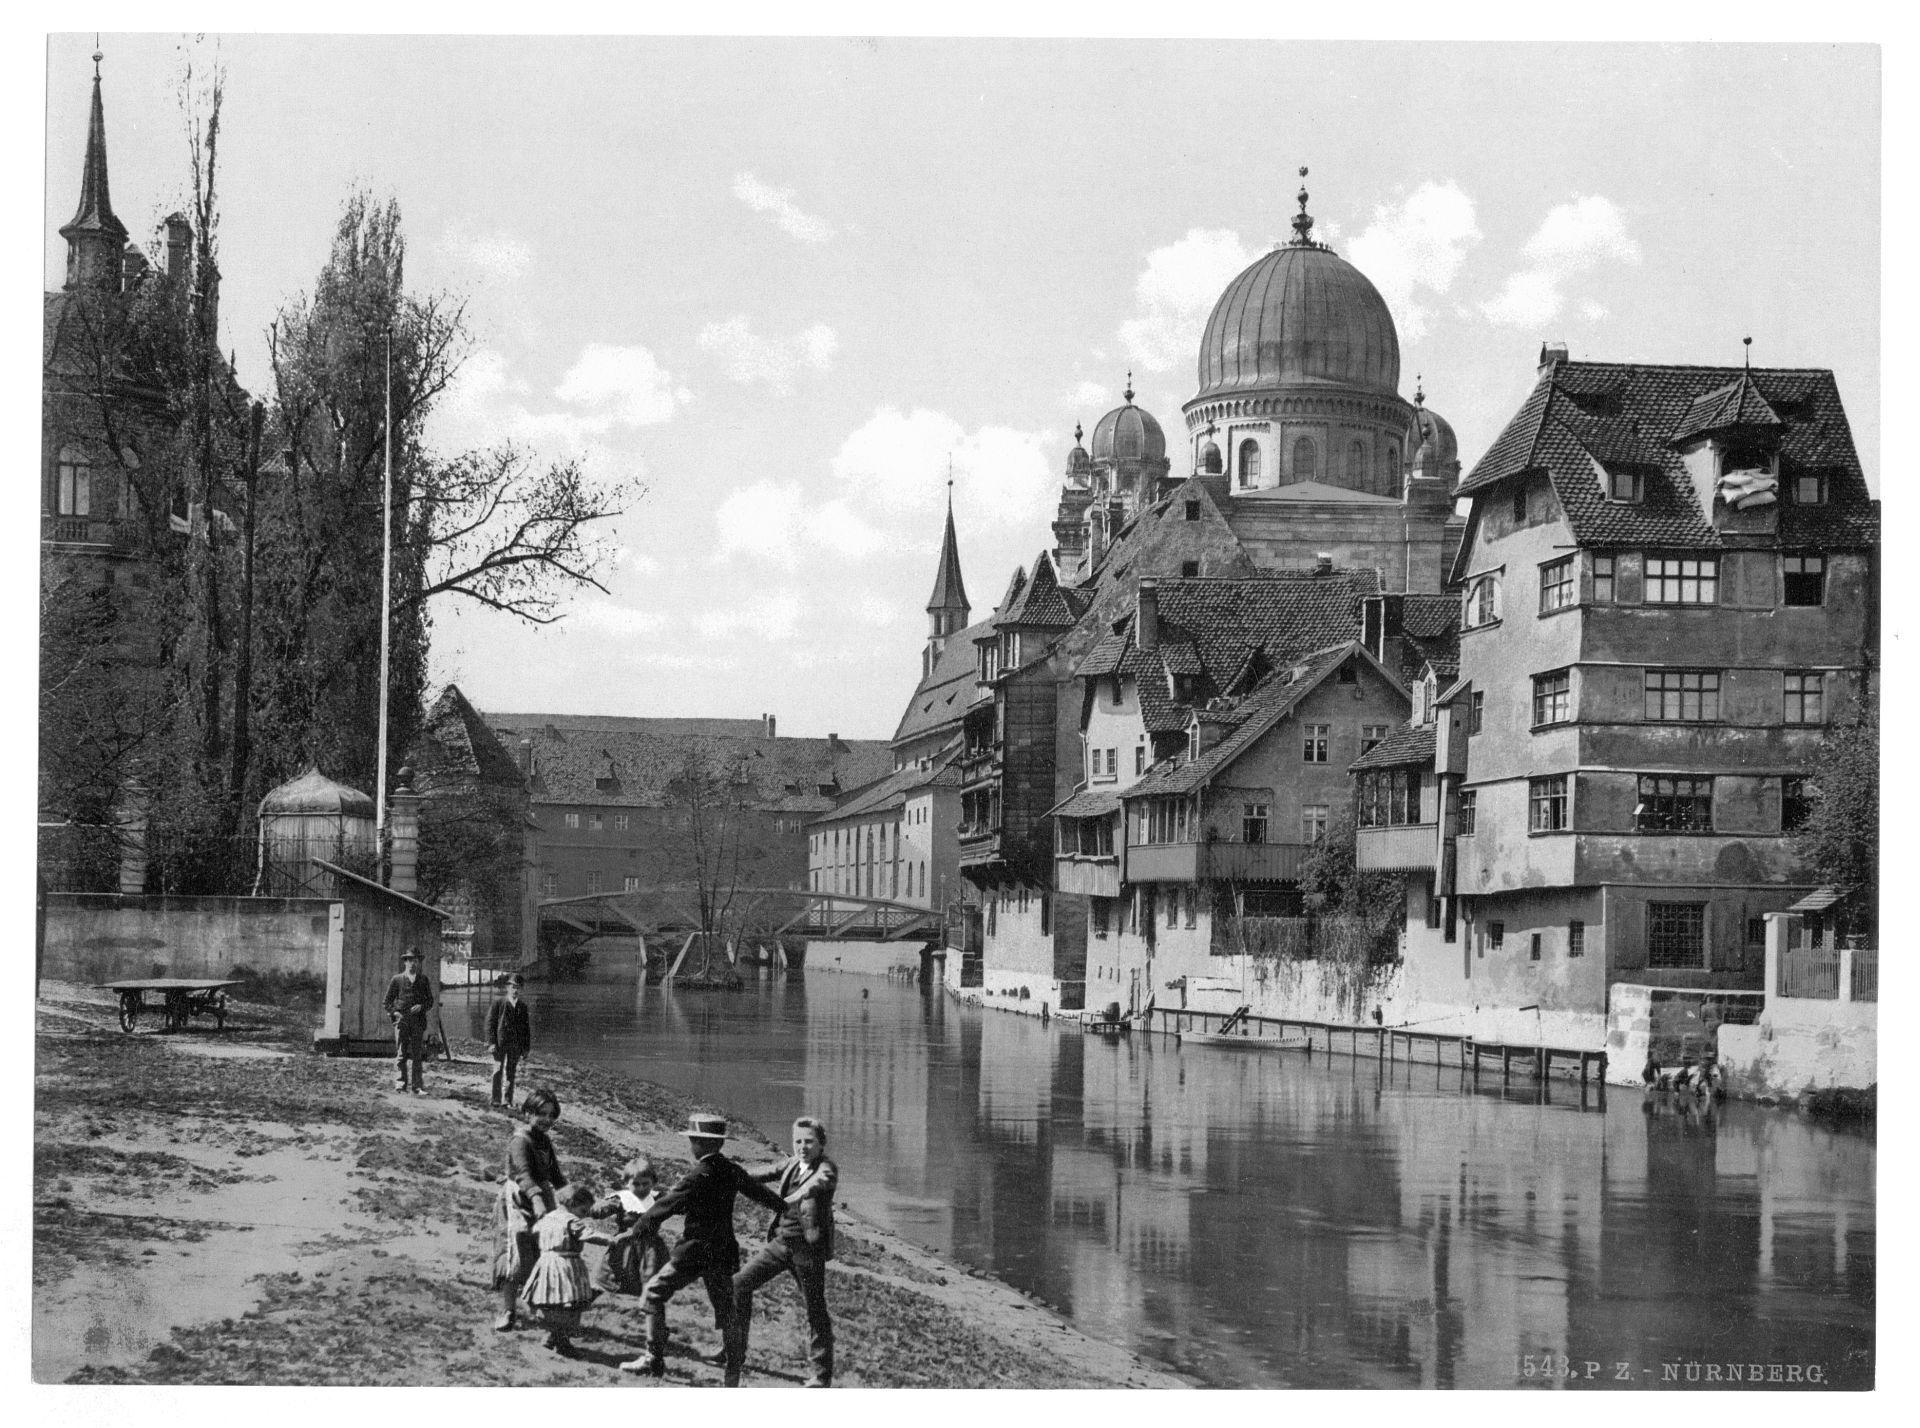 Schutt Isle, Nuremberg, Bavaria, Germany (1890s).jpeg